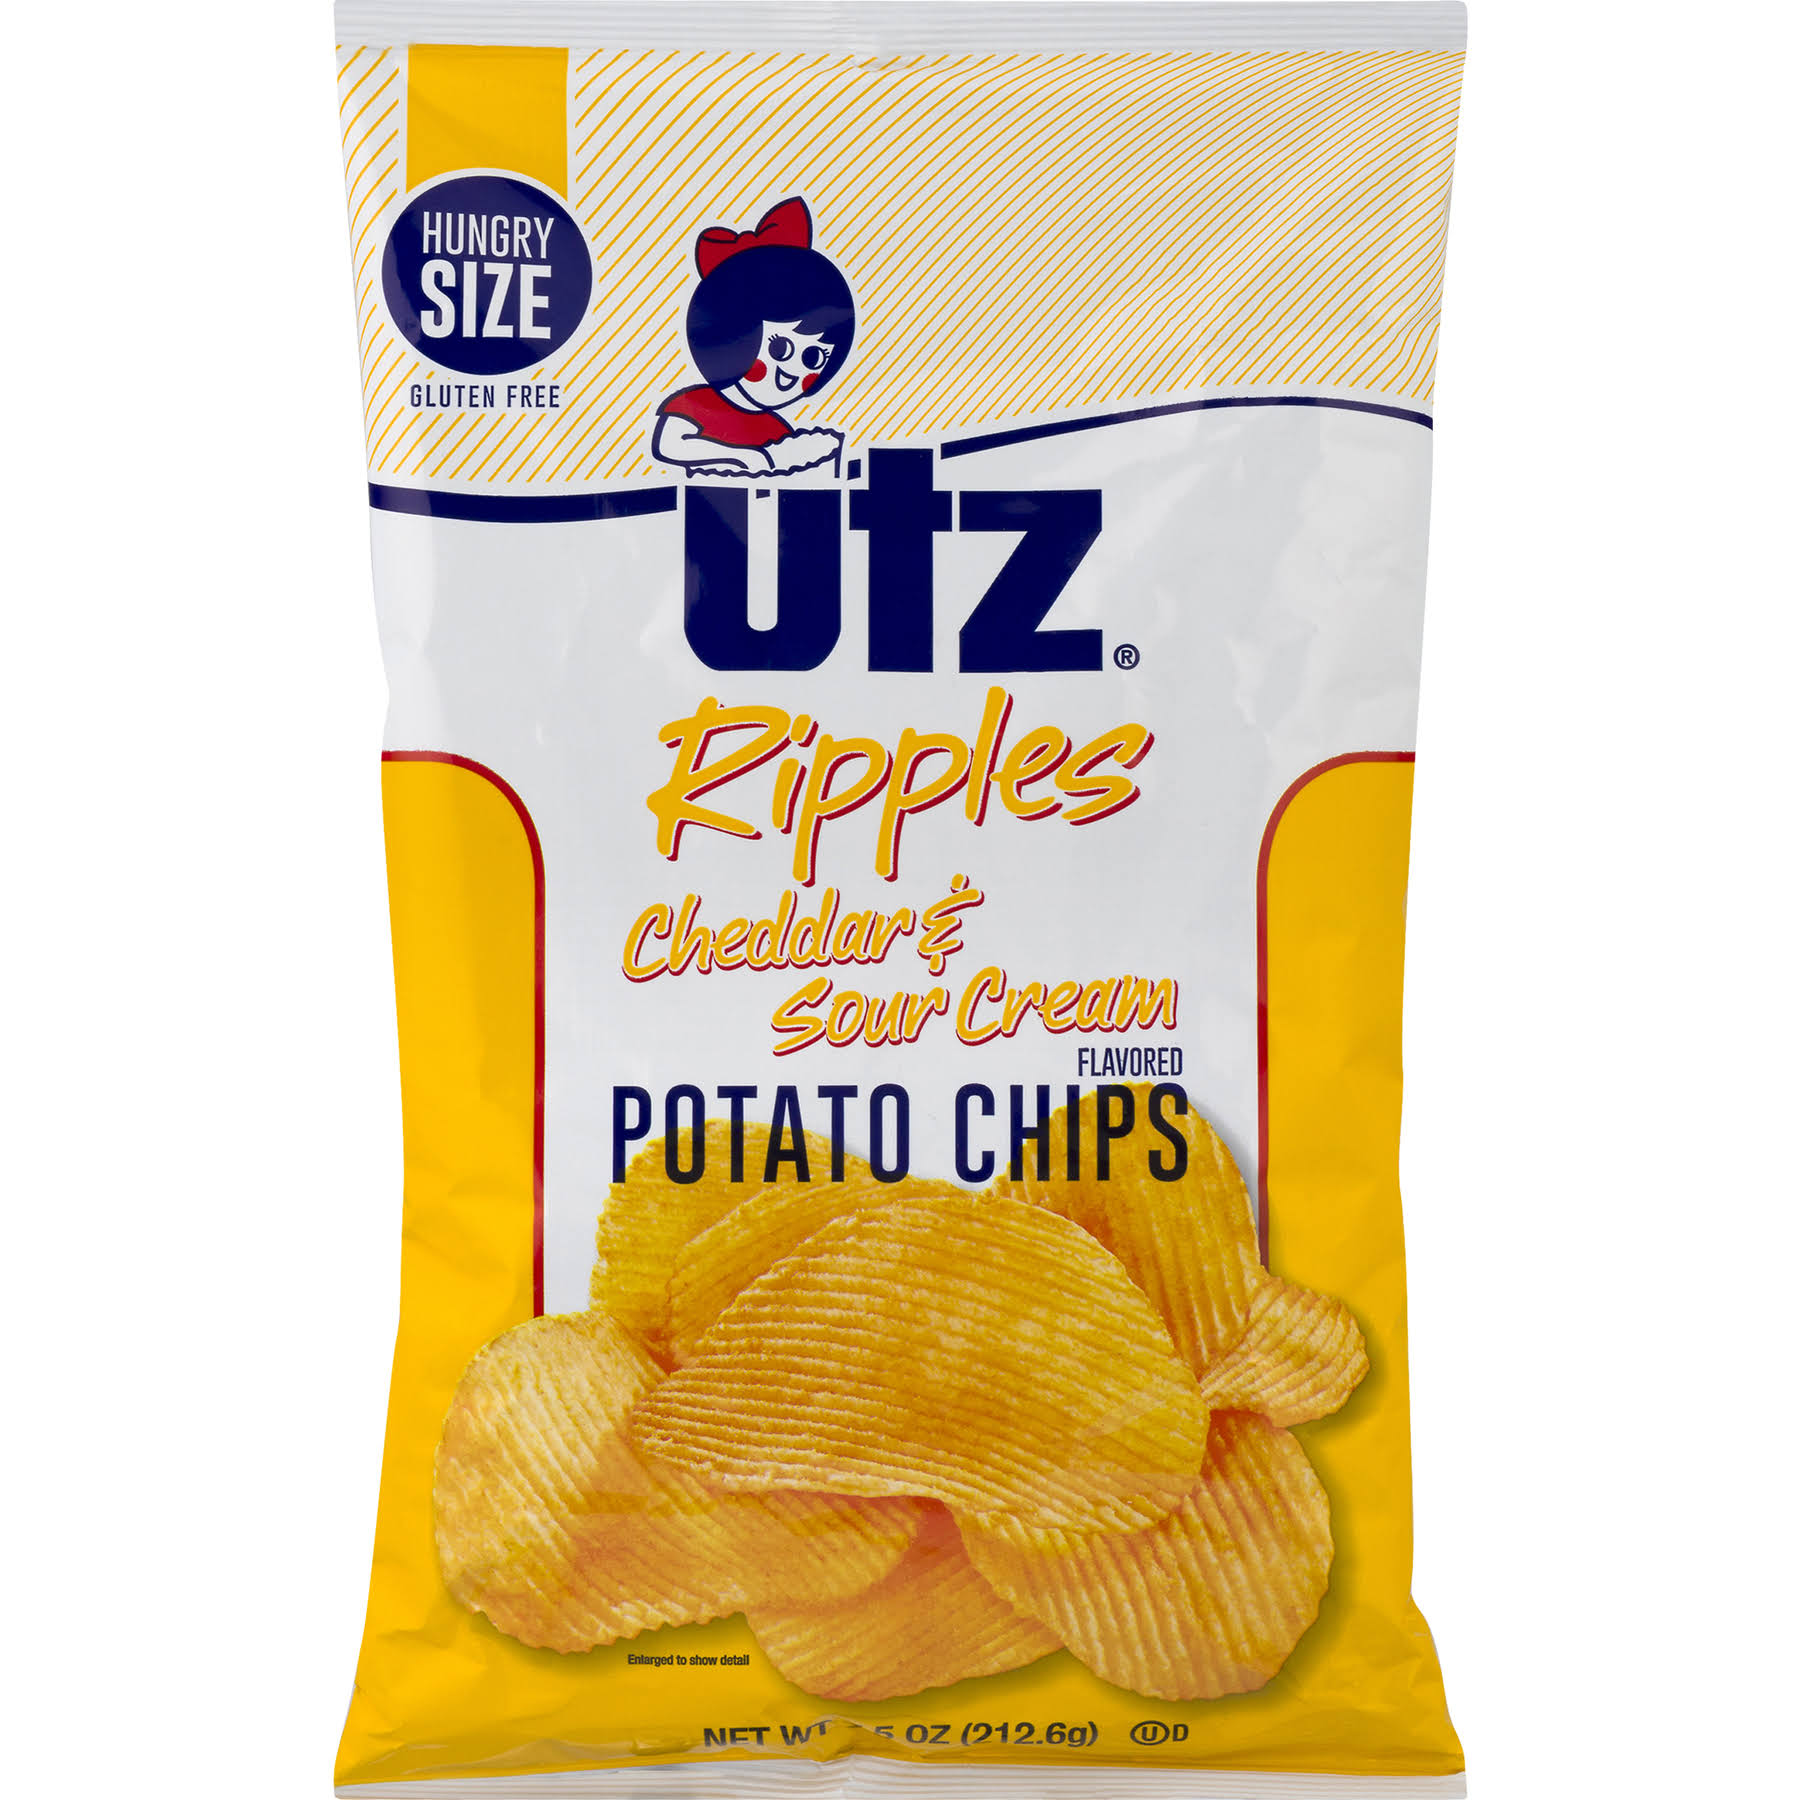 Utz Potato Chips - Cheddar and Sour Cream, 7.5oz